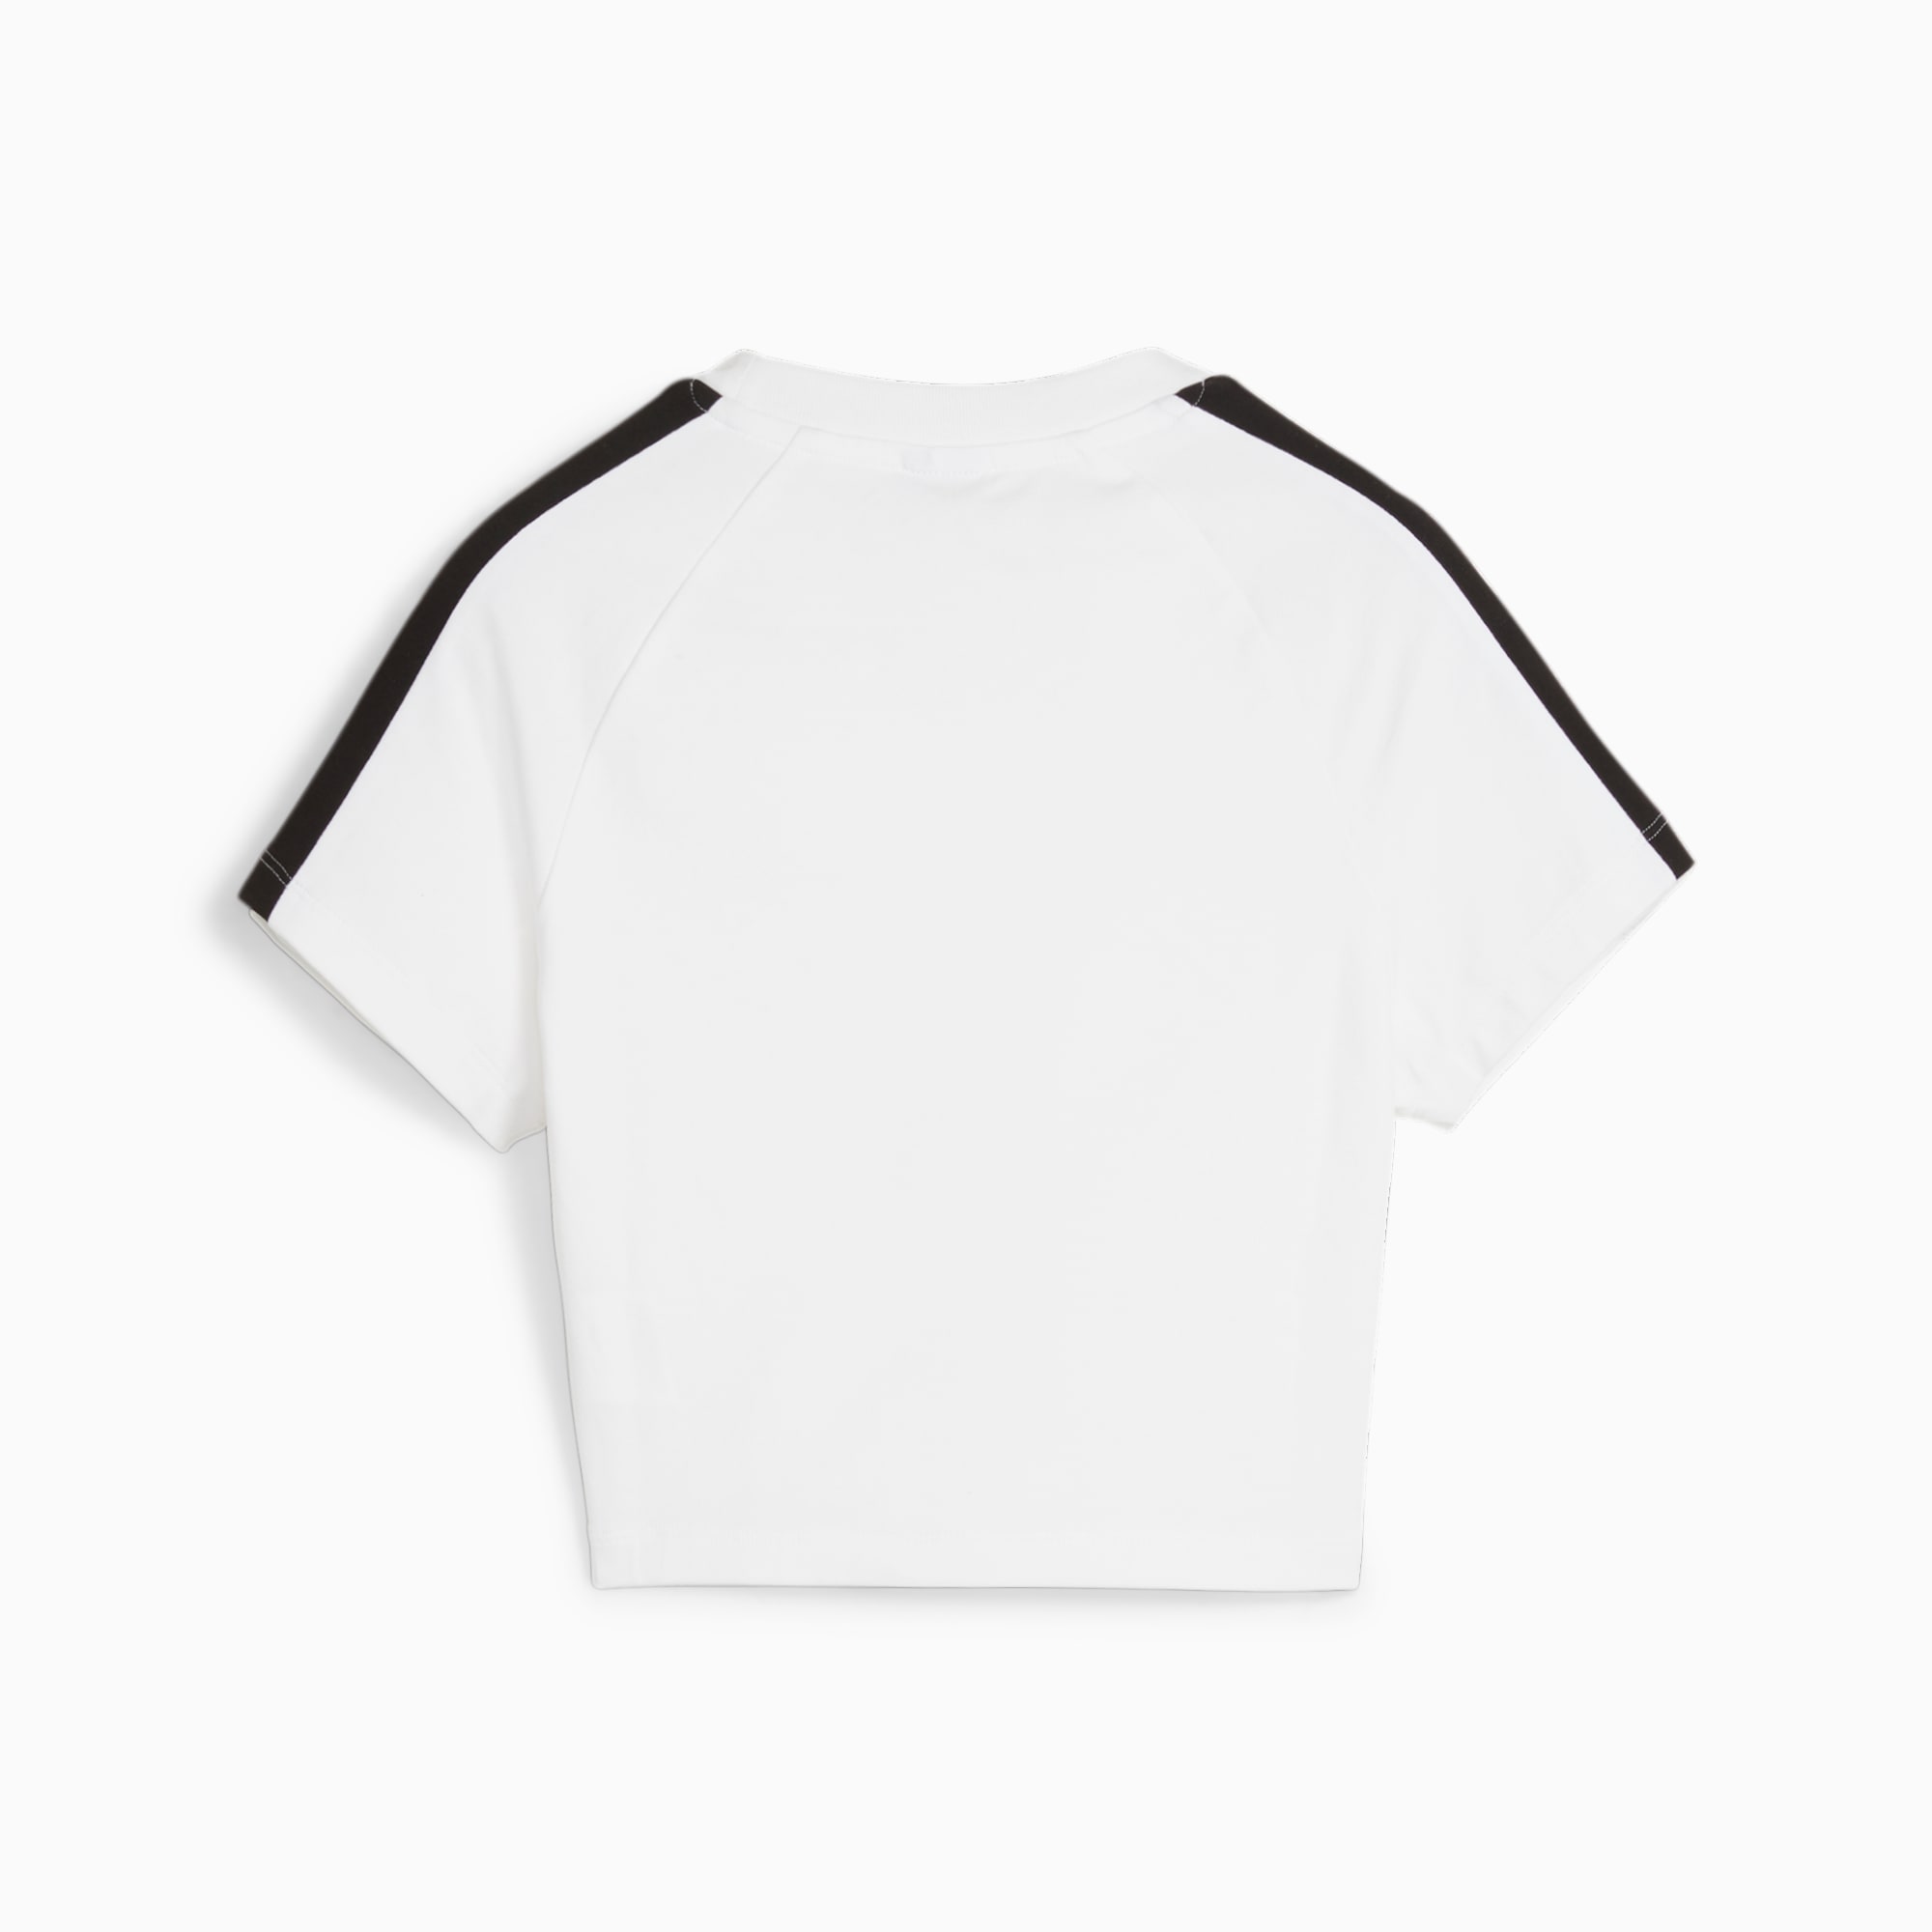 PUMA Iconic T7 Women's Baby T-Shirt, White, Size M, Clothing